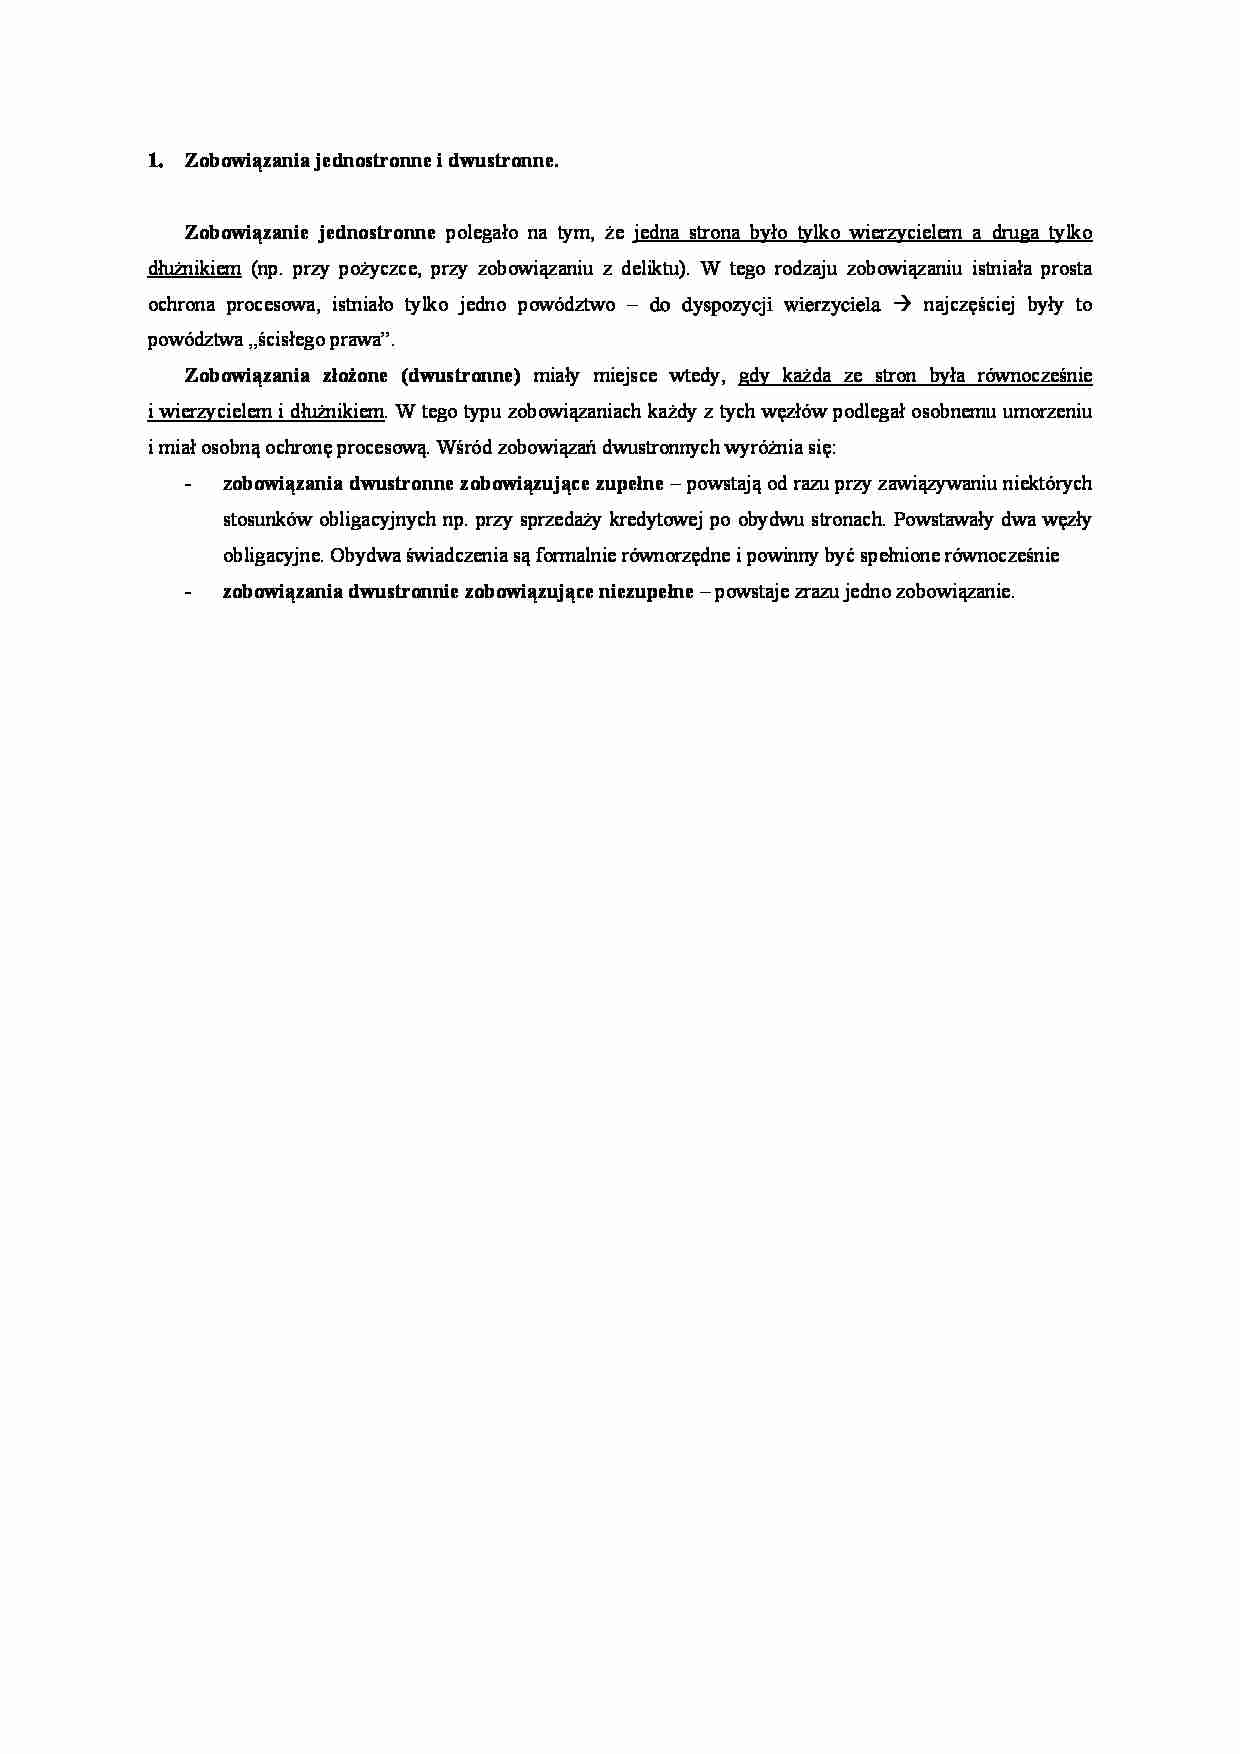 Zobowiązania jednostronne i dwustronne- opracowanie - strona 1